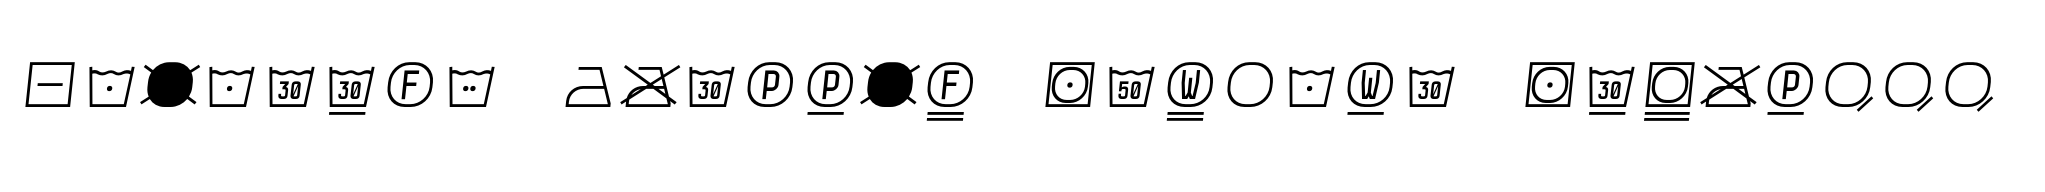 Monostep Washing Symbols Straight Thin Italic image